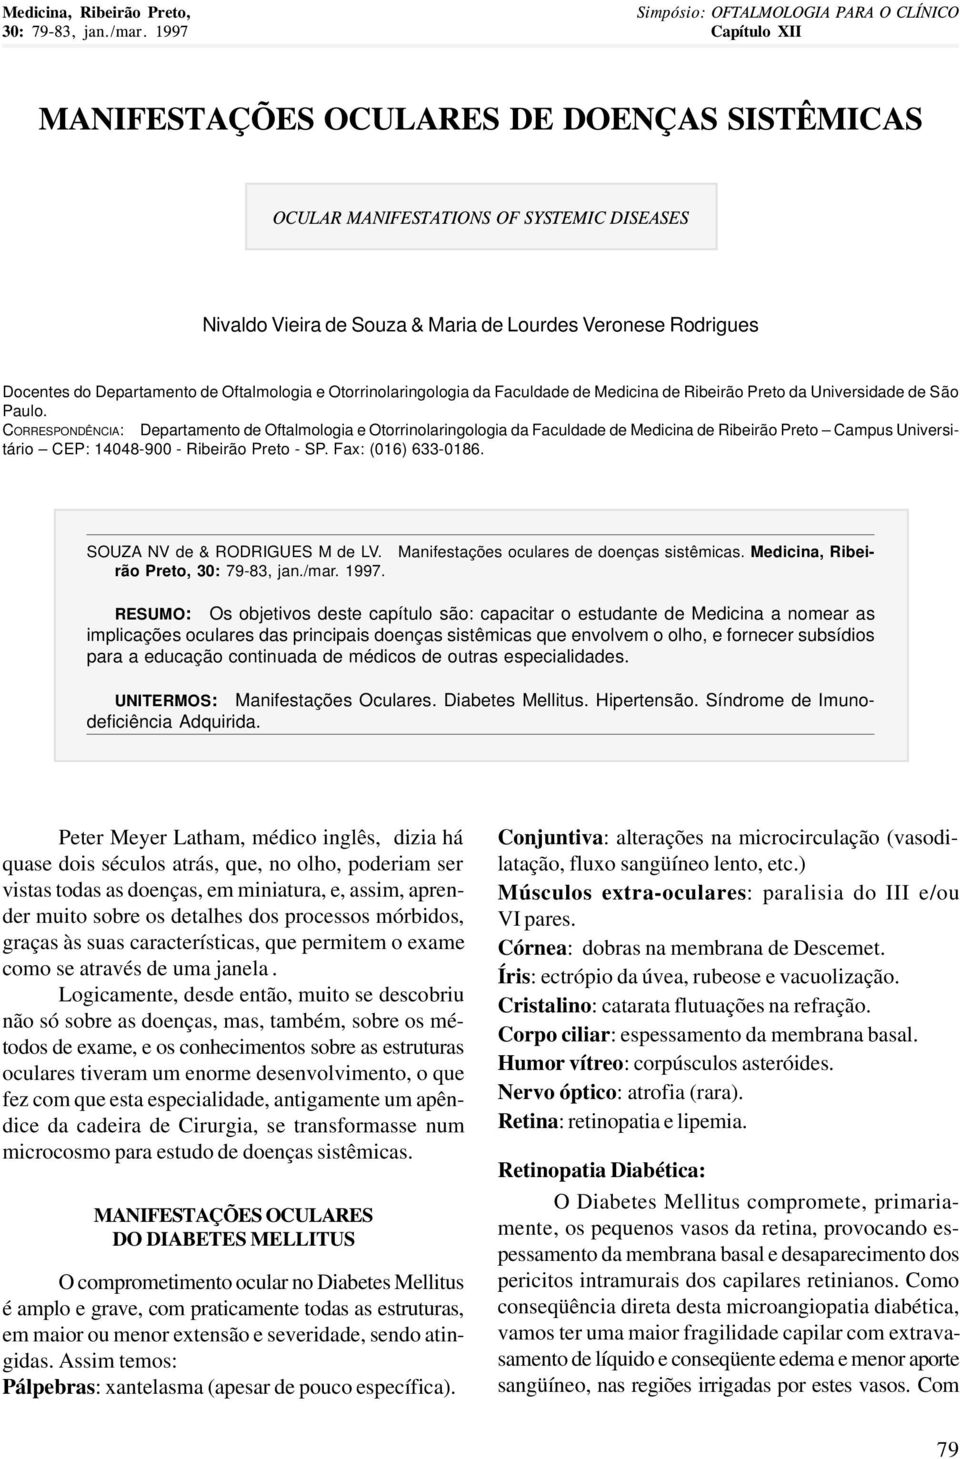 Oftalmologia e Otorrinolaringologia da Faculdade de Medicina de Ribeirão Preto da Universidade de São Paulo.